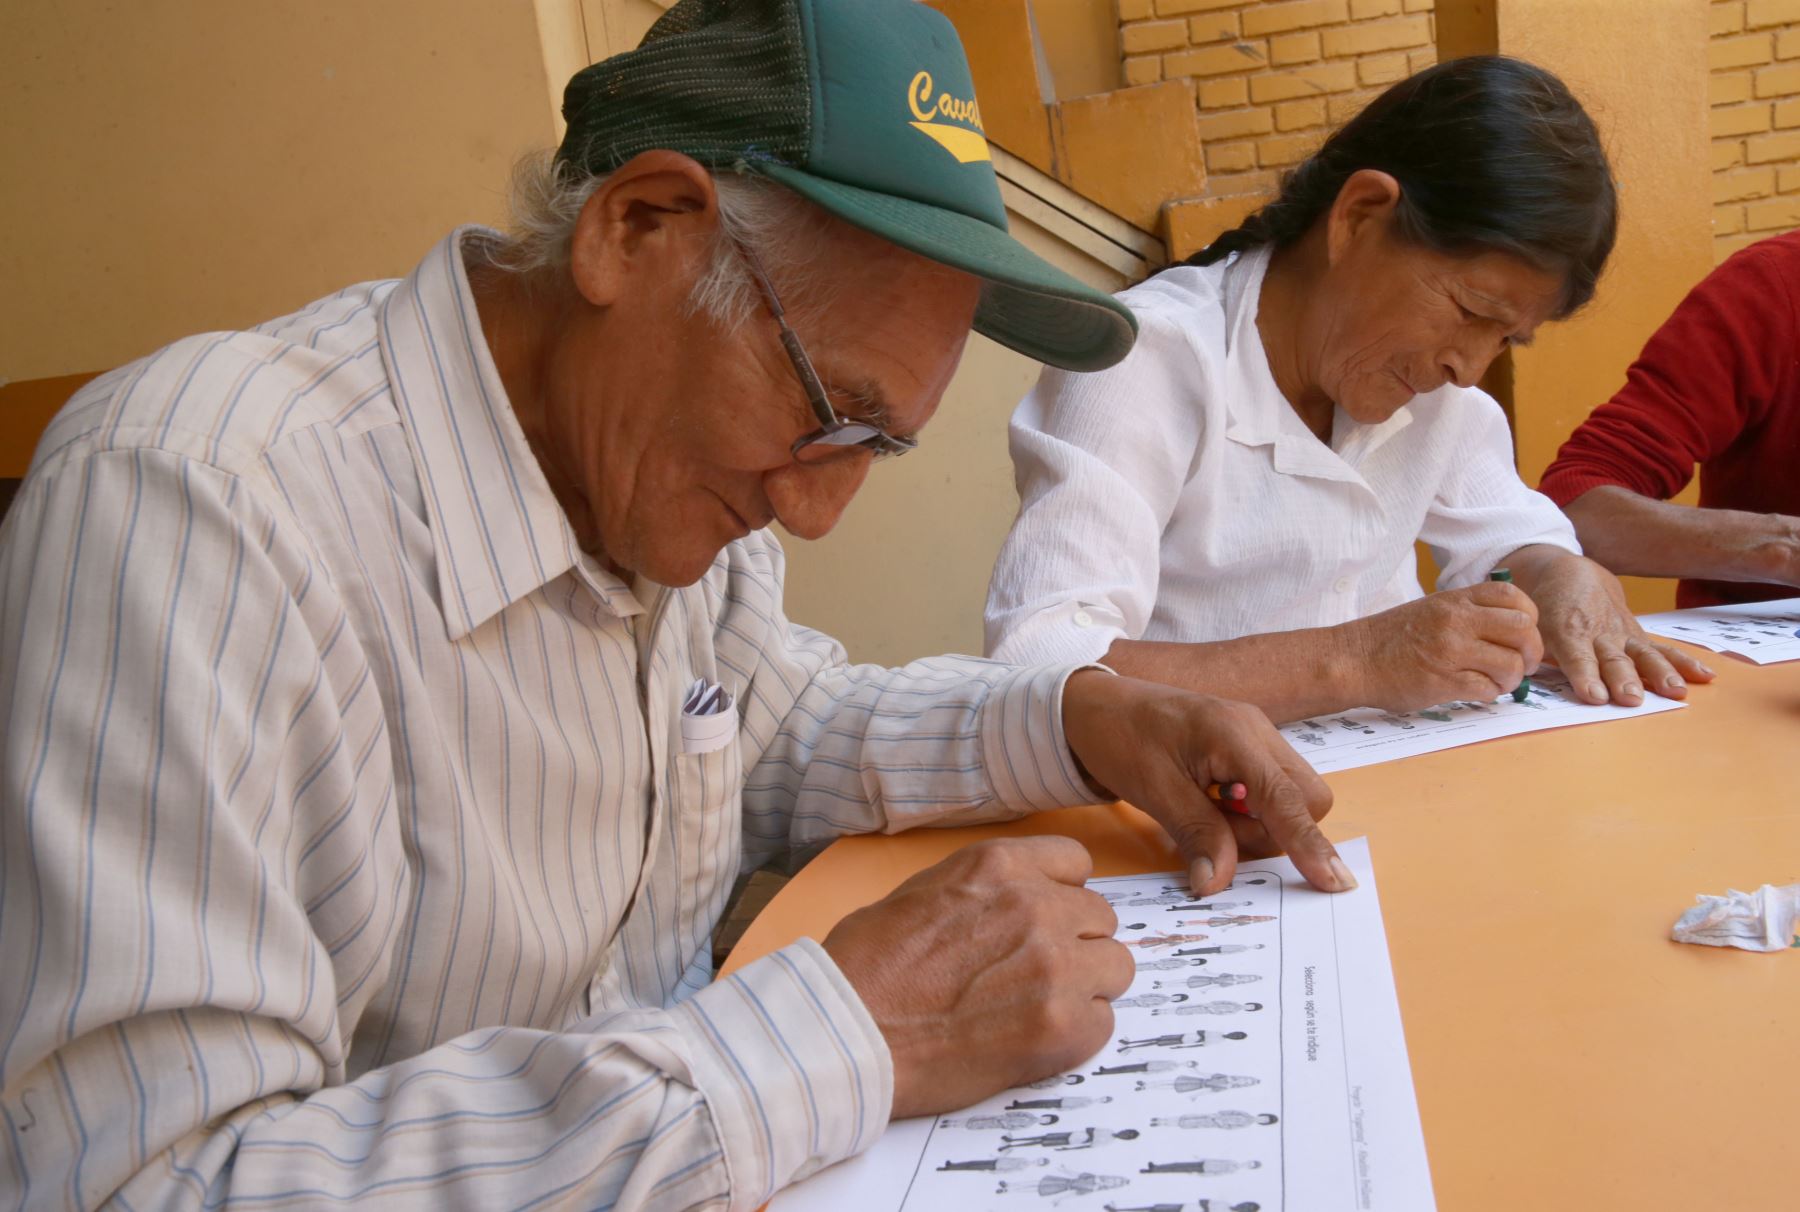 Abuelos quechua-hablantes del distrito de El Agustino aprenden a leer, escribir en español mediante el uso de tablets facilitadas por voluntaria de Telefónica del Perú. Foto: ANDINA/ Norman Córdova